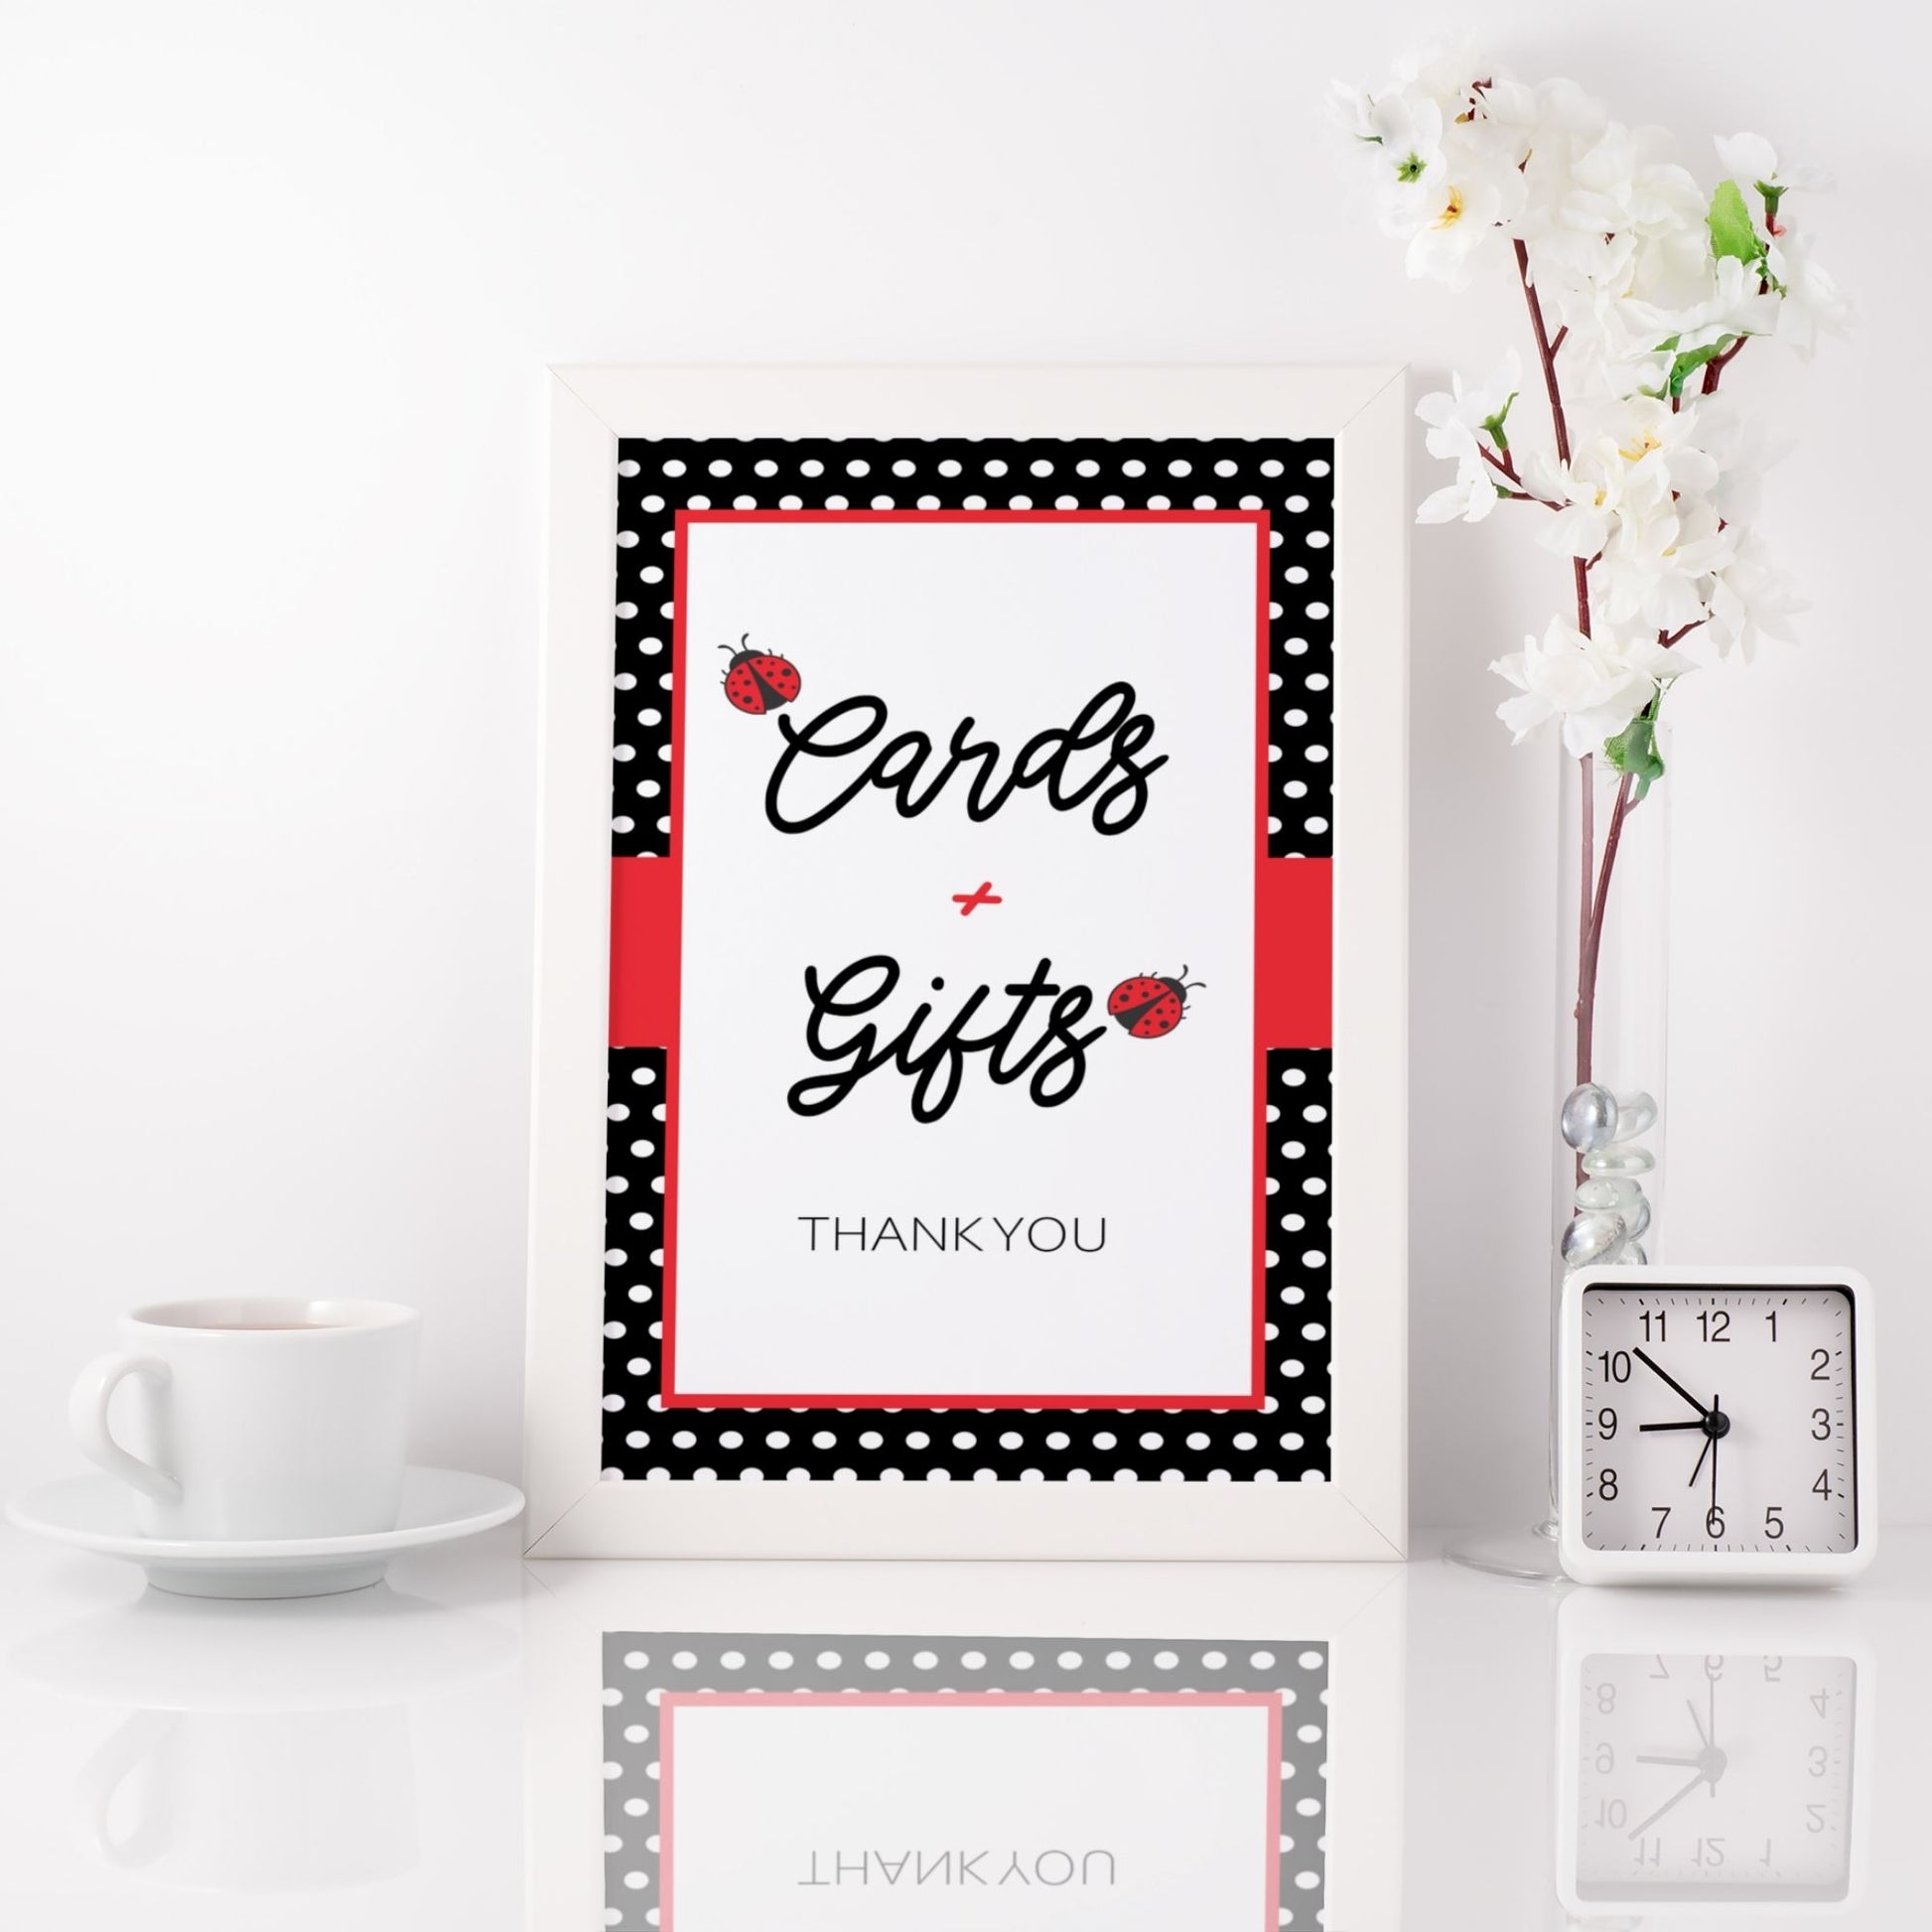 Cards and Gifts Sign Printable - Ladybug - Droo & Aya